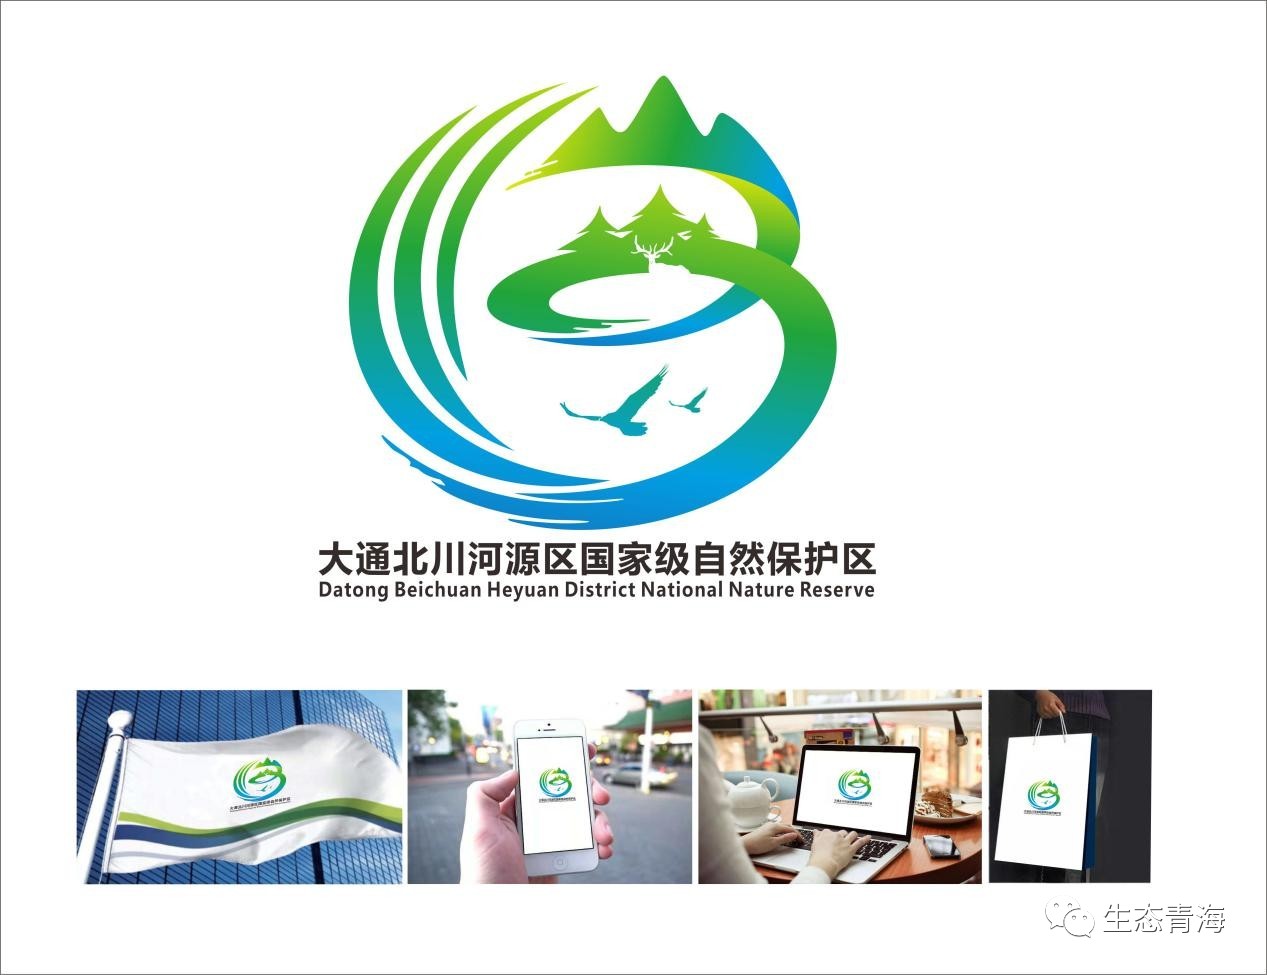 大通北川河源区国家级自然保护区logo征集尘埃落定